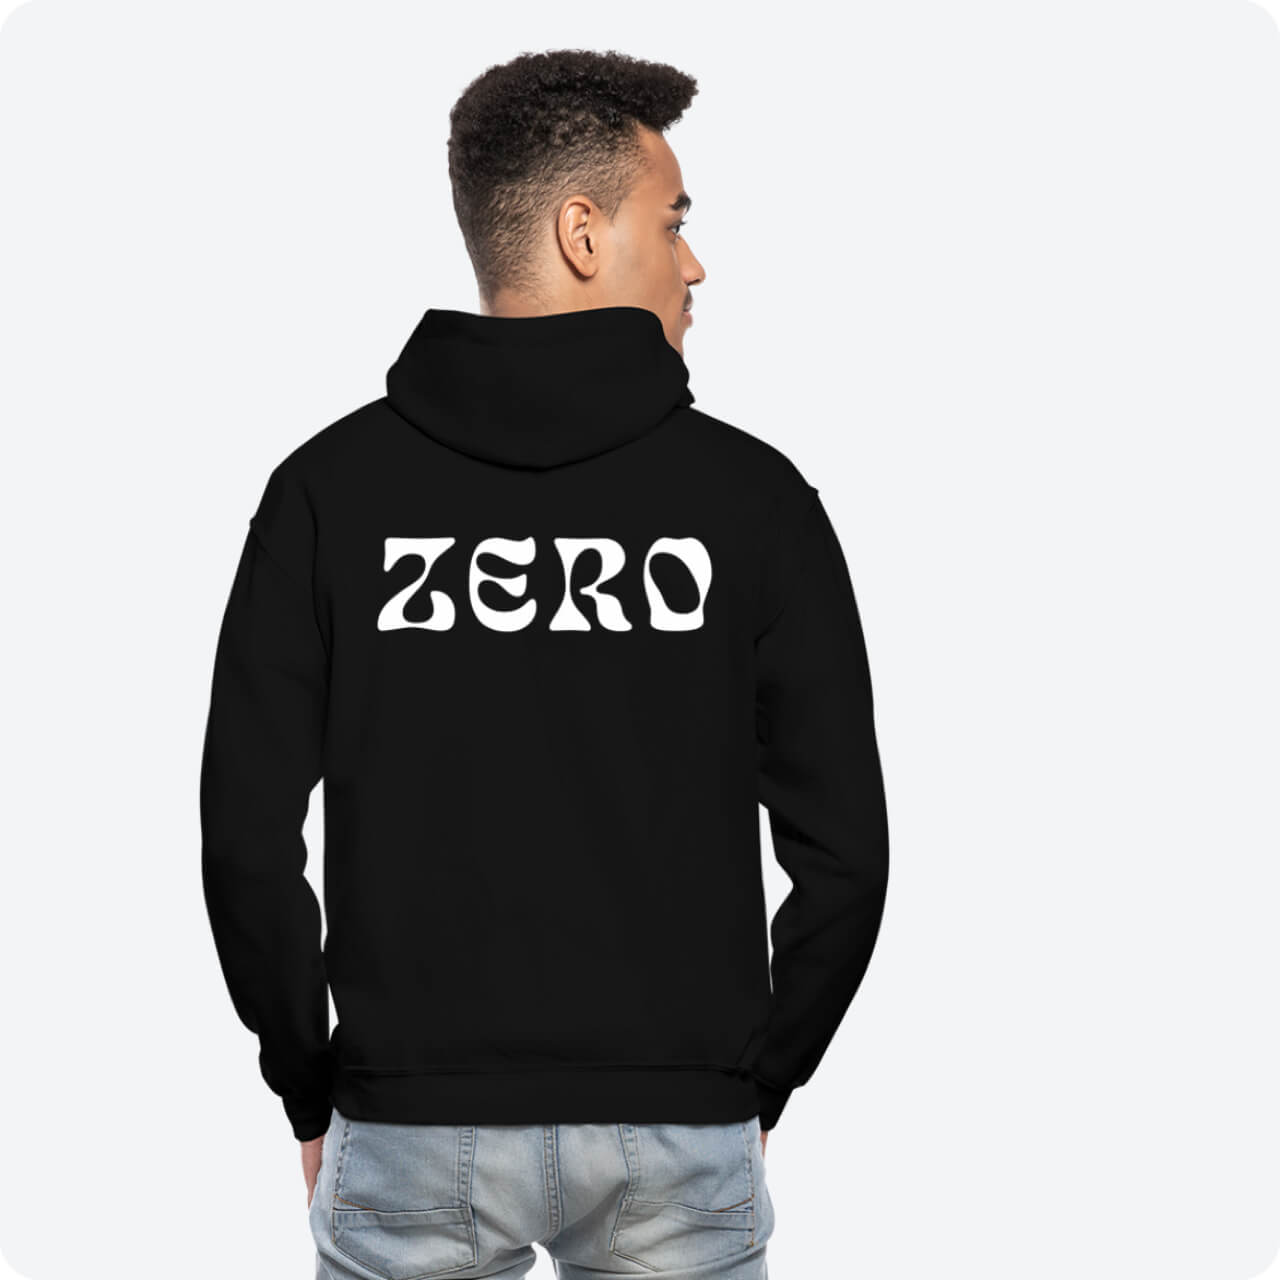 Zero Brand Clothing